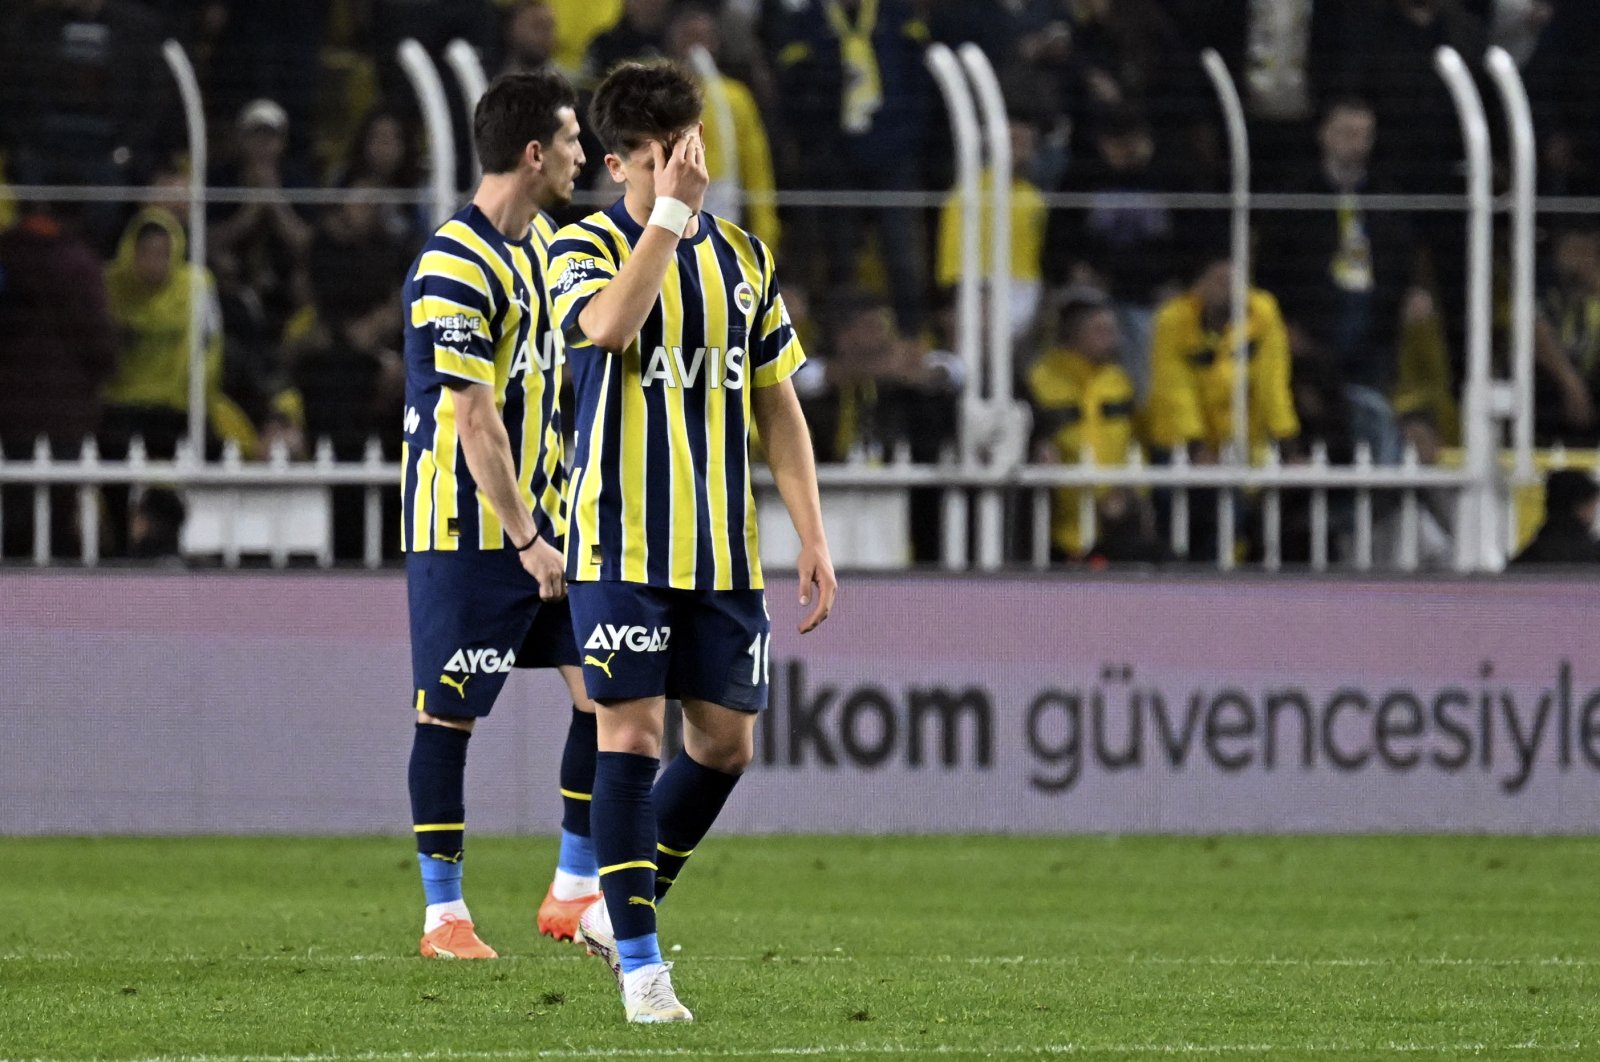 Peluang Fener memperkecil jarak Süper Lig dengan hasil imbang Istanbulspor